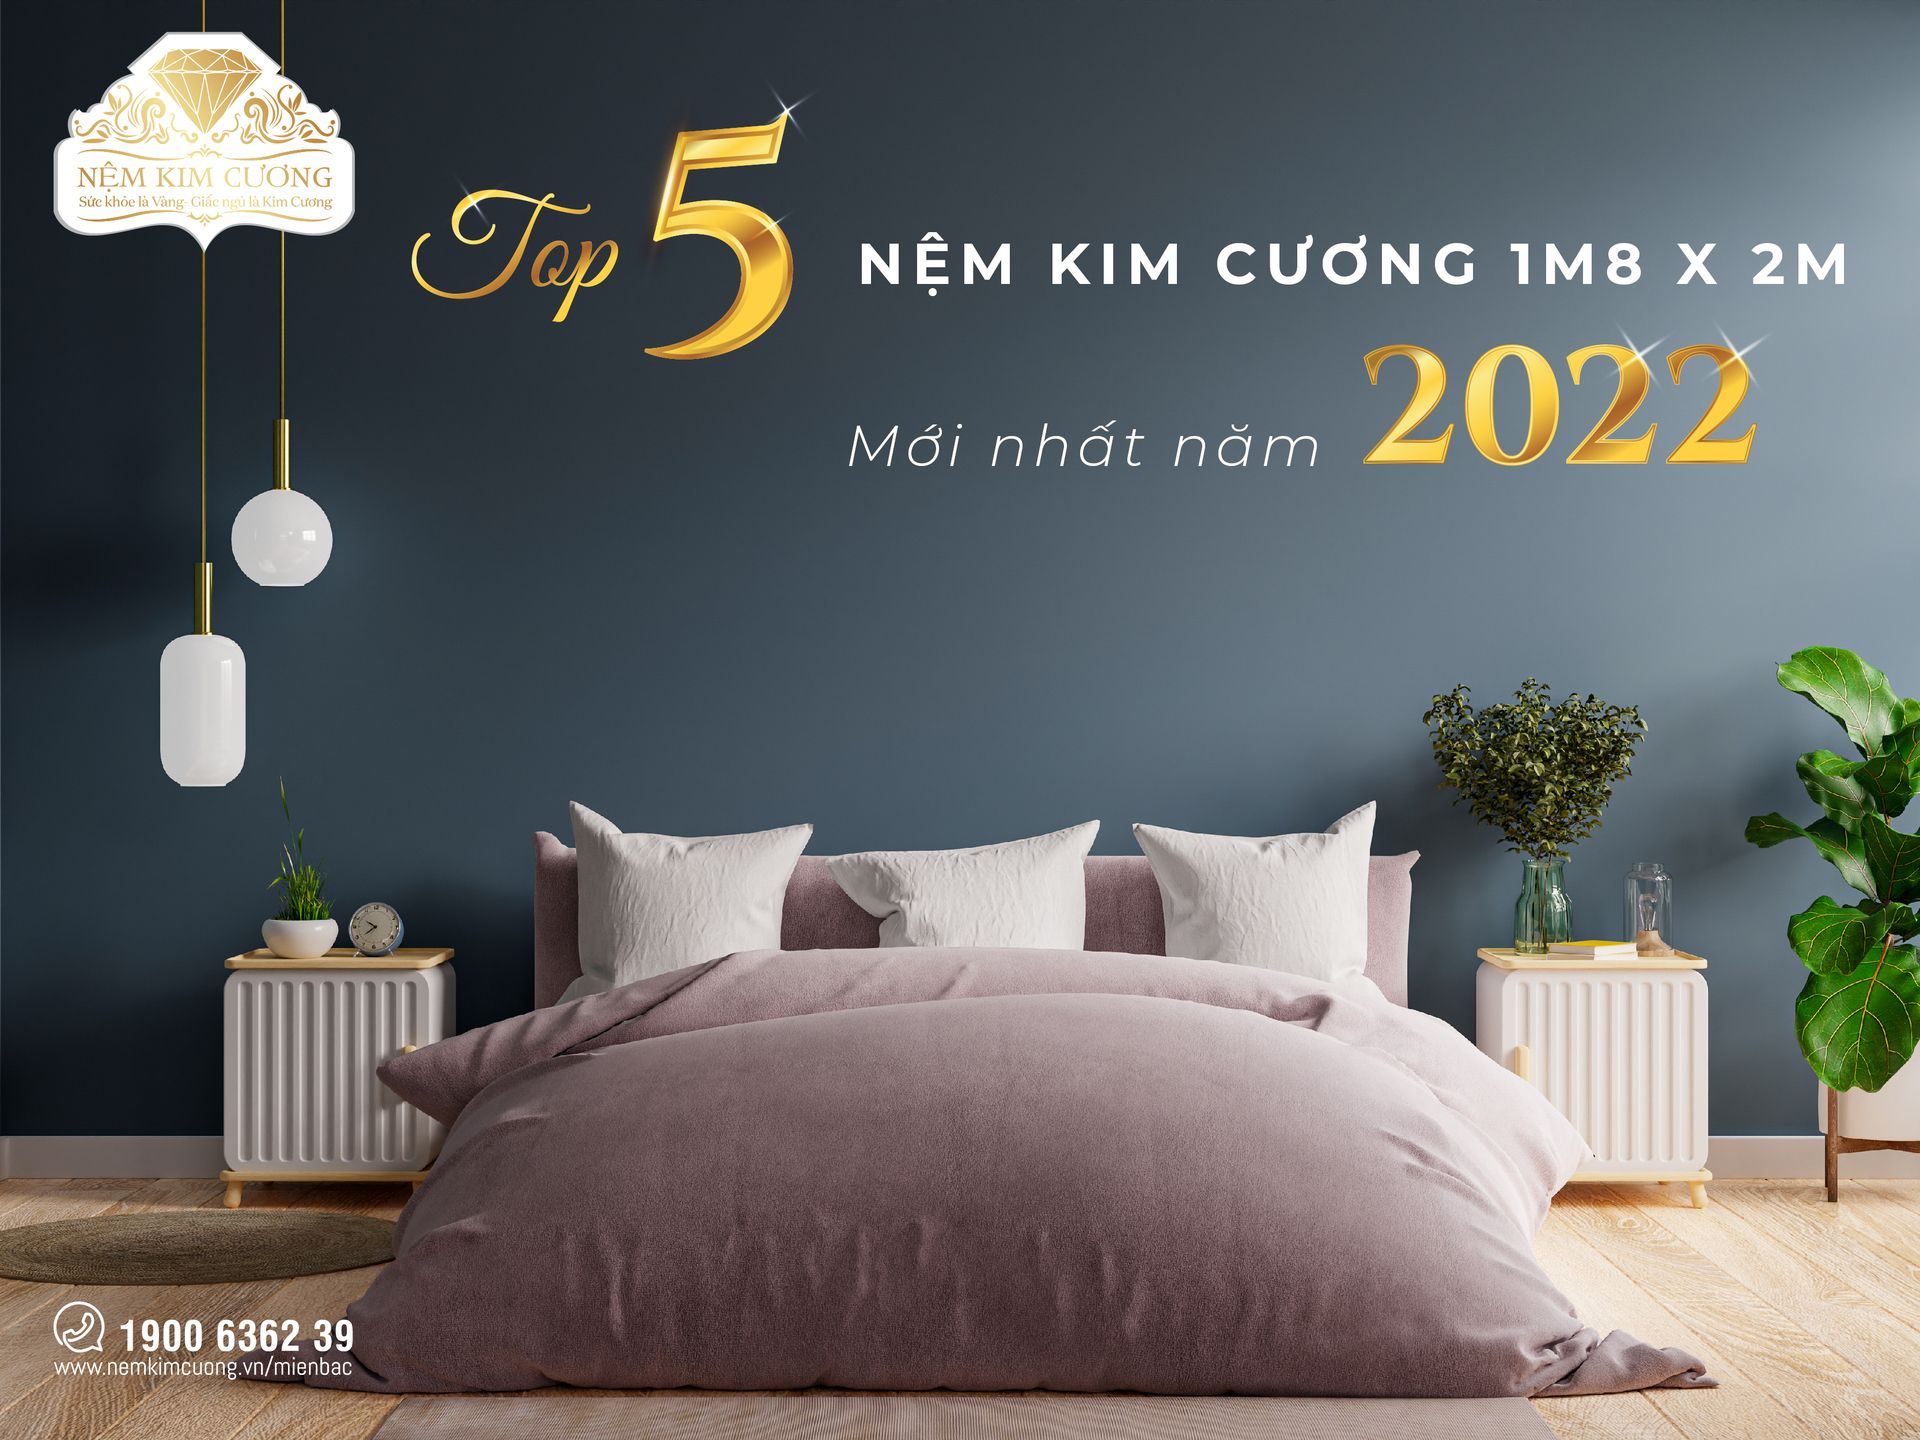 TOP 05 NỆM KIM CƯƠNG 1M8X2M MỚI NHẤT NĂM 2022